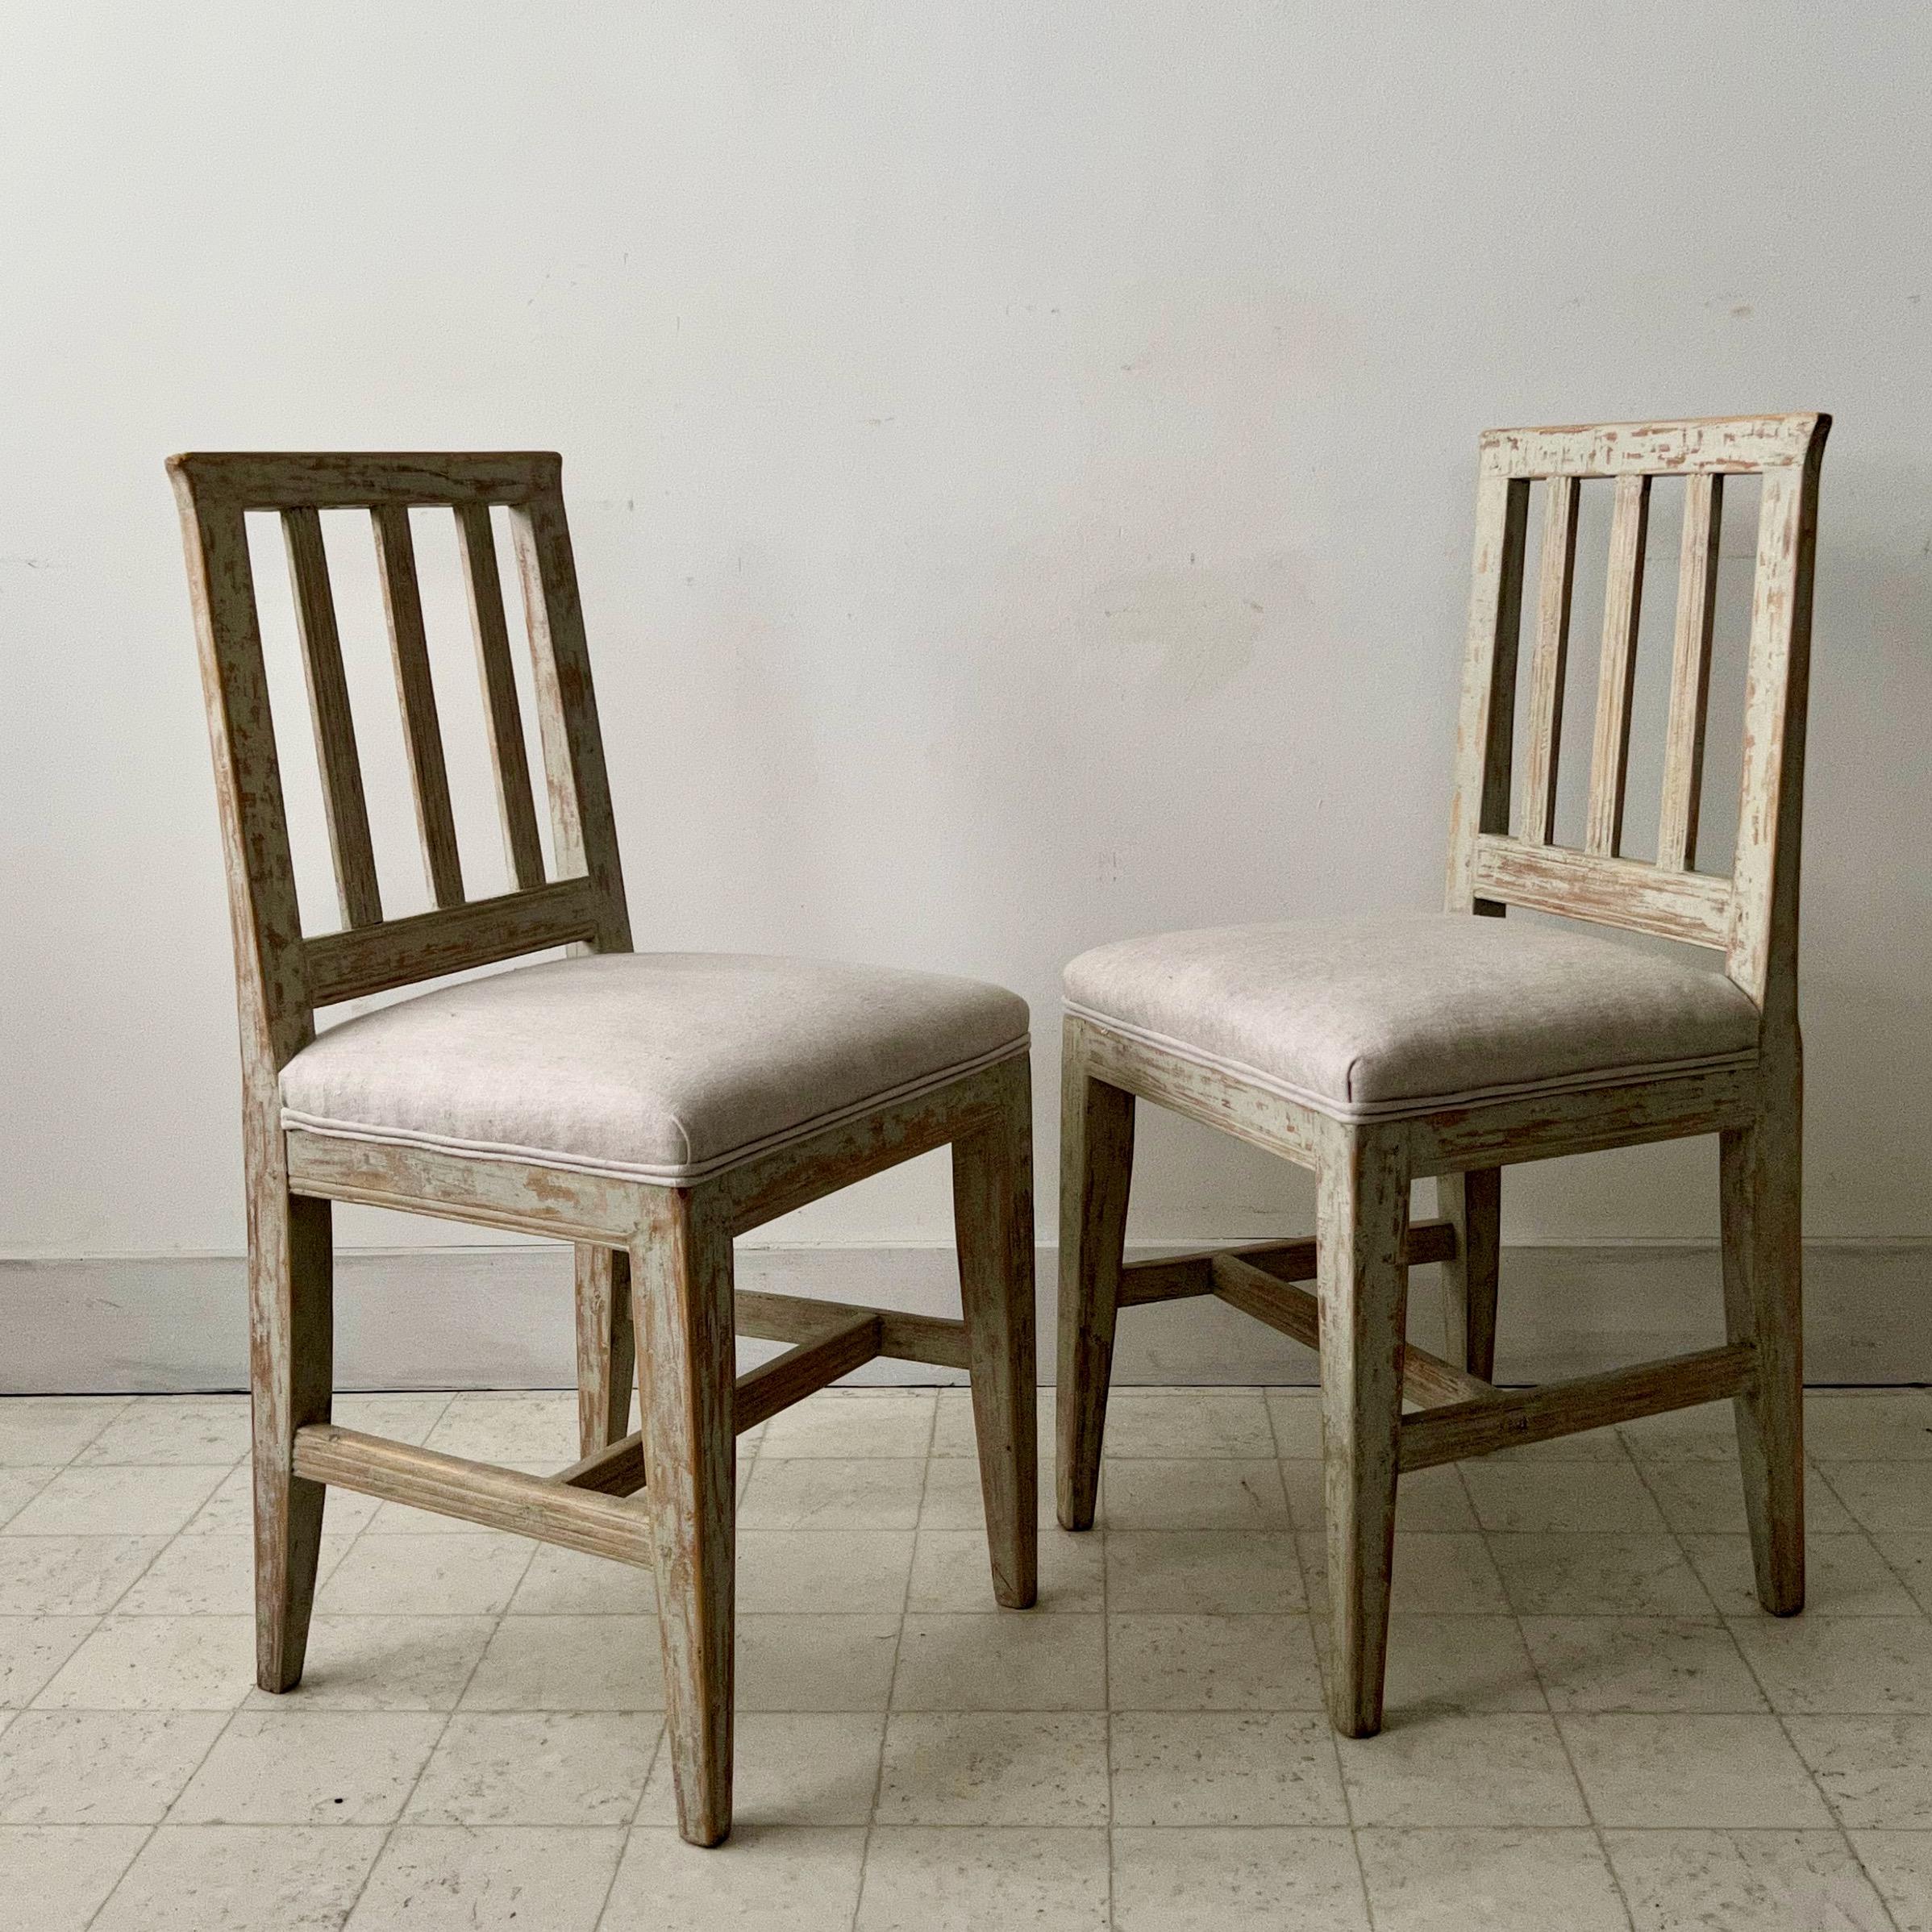 Presque une paire de chaises de campagne suédoises du 19e siècle. Très légère différence de taille avec une belle patine et un nouveau rembourrage en lin.
